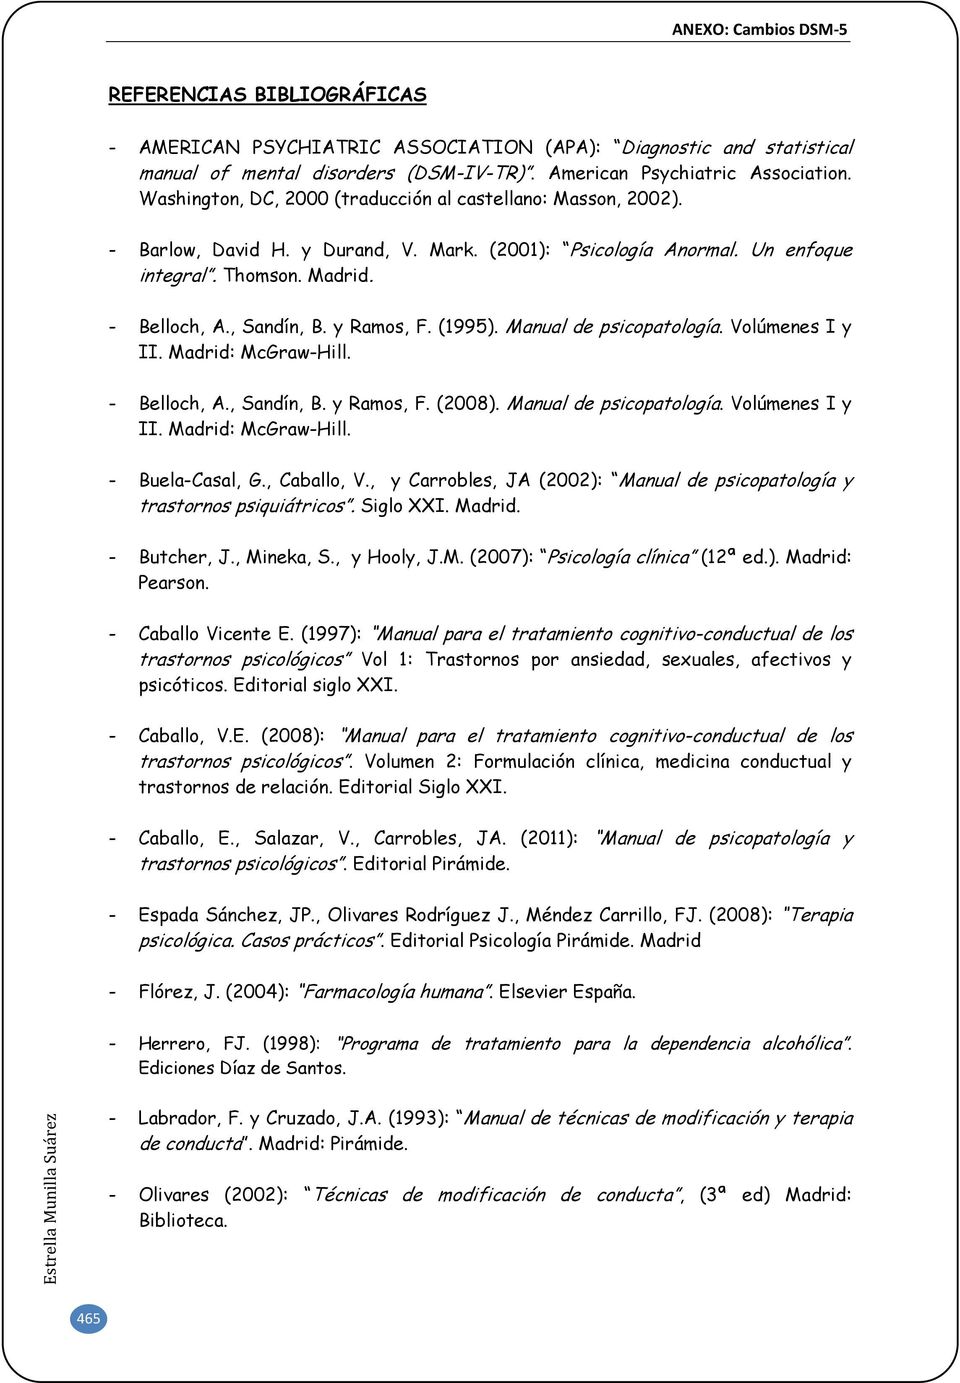 y Ramos, F. (1995). Manual de psicopatología. Volúmenes I y II. Madrid: McGraw-Hill. - Belloch, A., Sandín, B. y Ramos, F. (2008). Manual de psicopatología. Volúmenes I y II. Madrid: McGraw-Hill. - Buela-Casal, G.